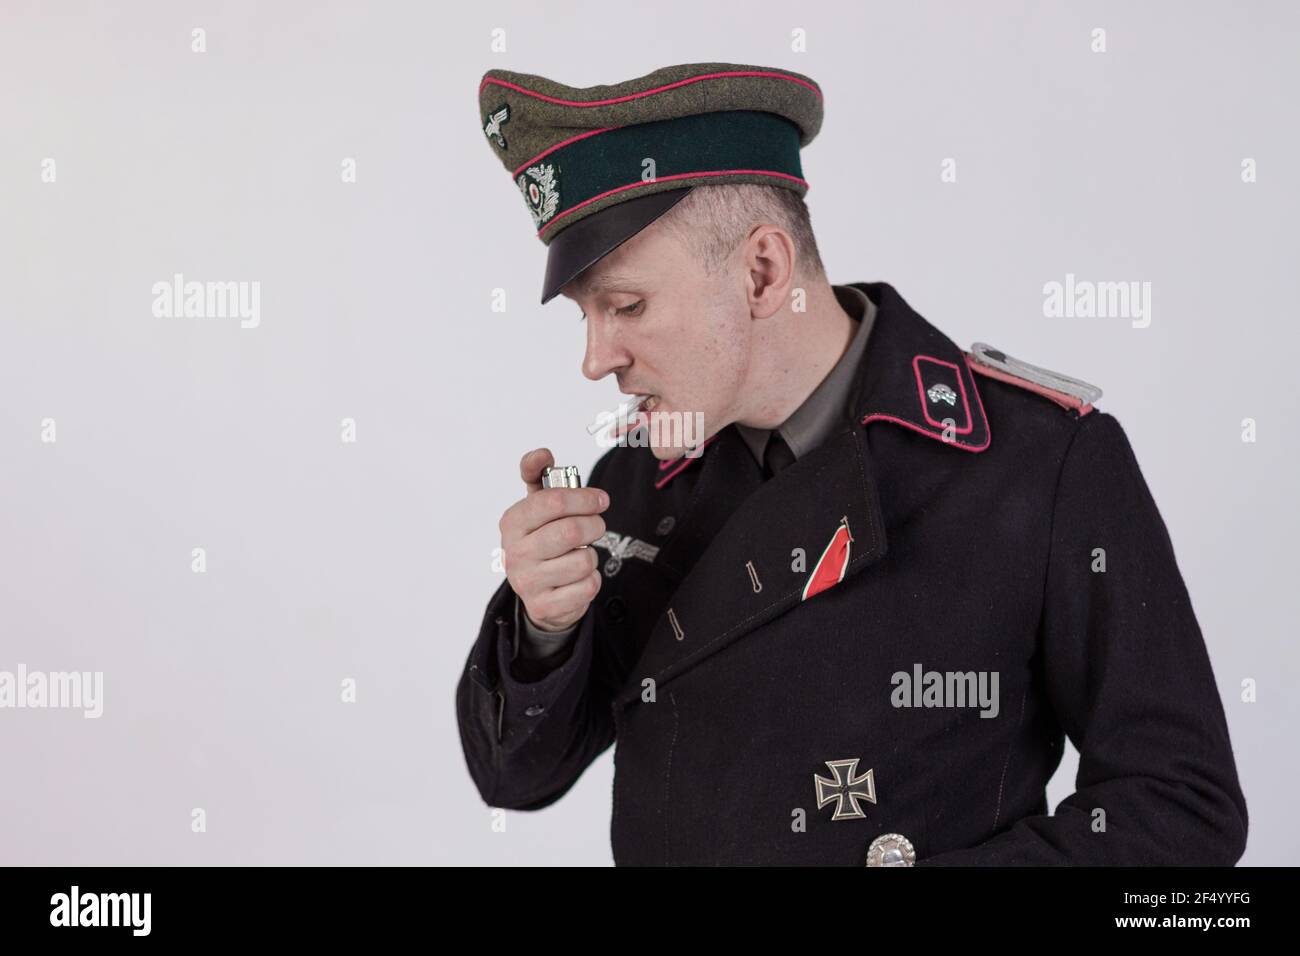 Acteur masculin réacteur dans l'uniforme militaire historique de char comme un officier de l'armée allemande pendant la Seconde Guerre mondiale à fume une cigarette sur un backgrou blanc Banque D'Images